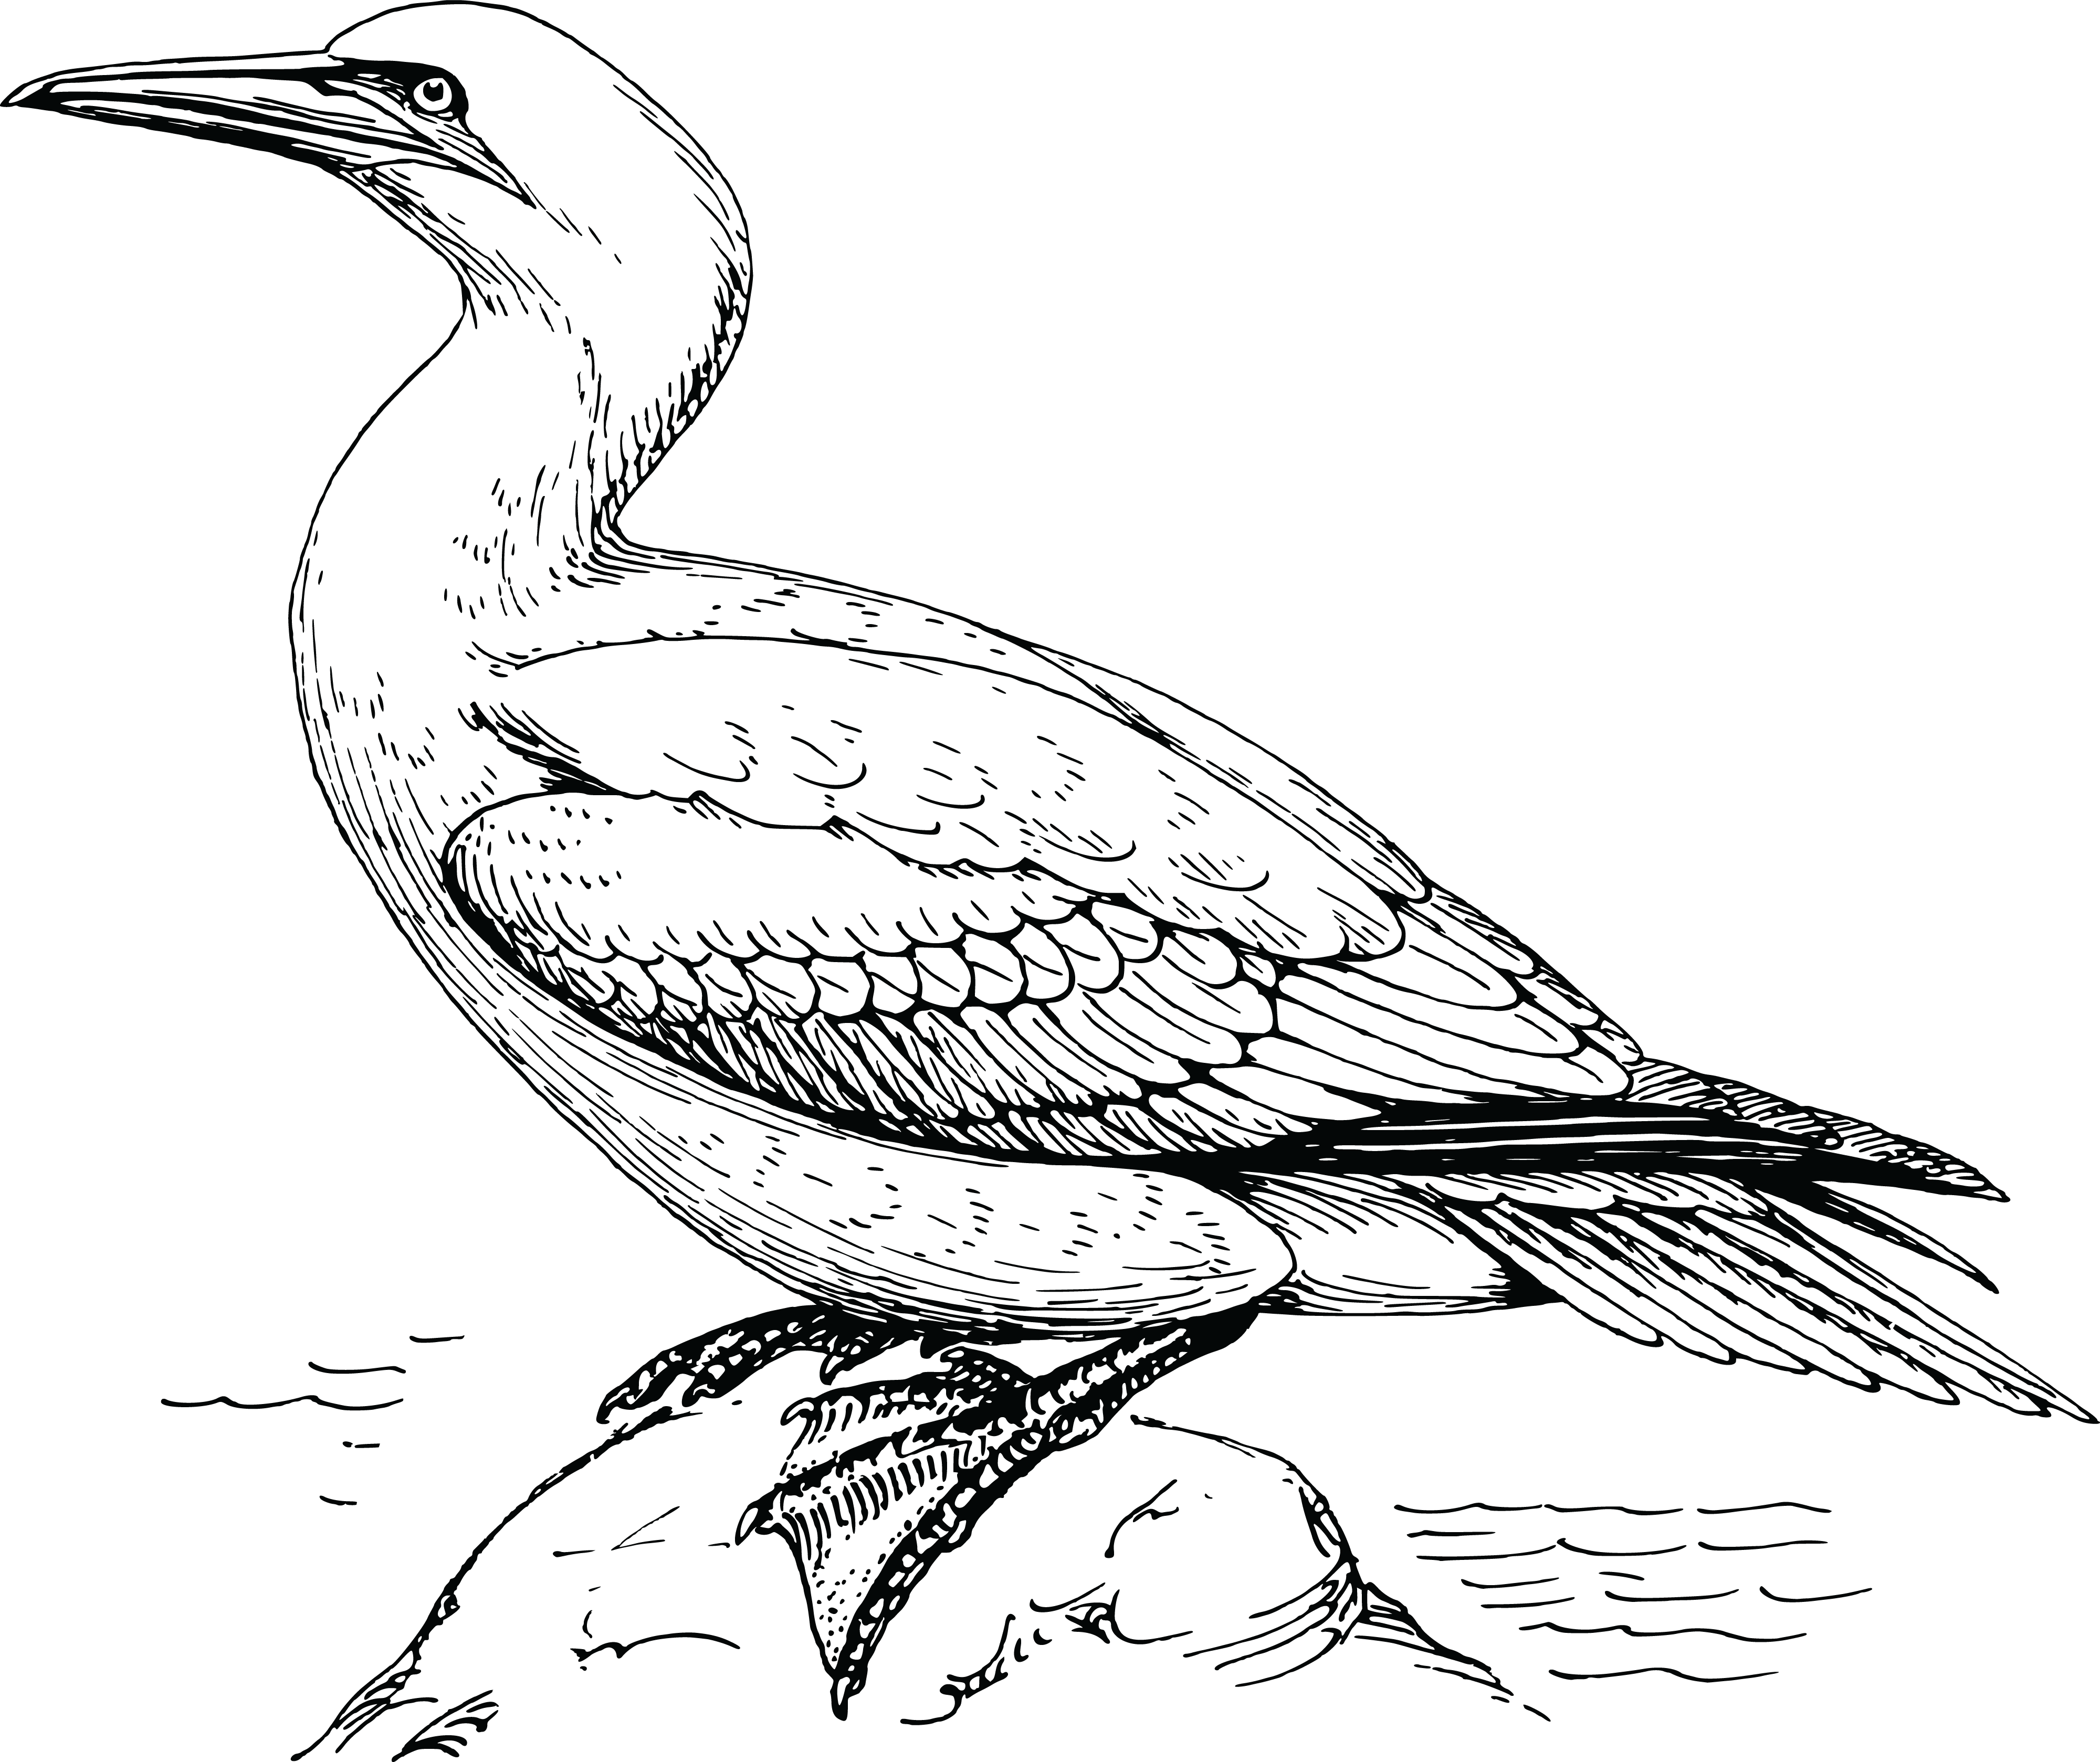 Free Clipart Of A Gannet bird